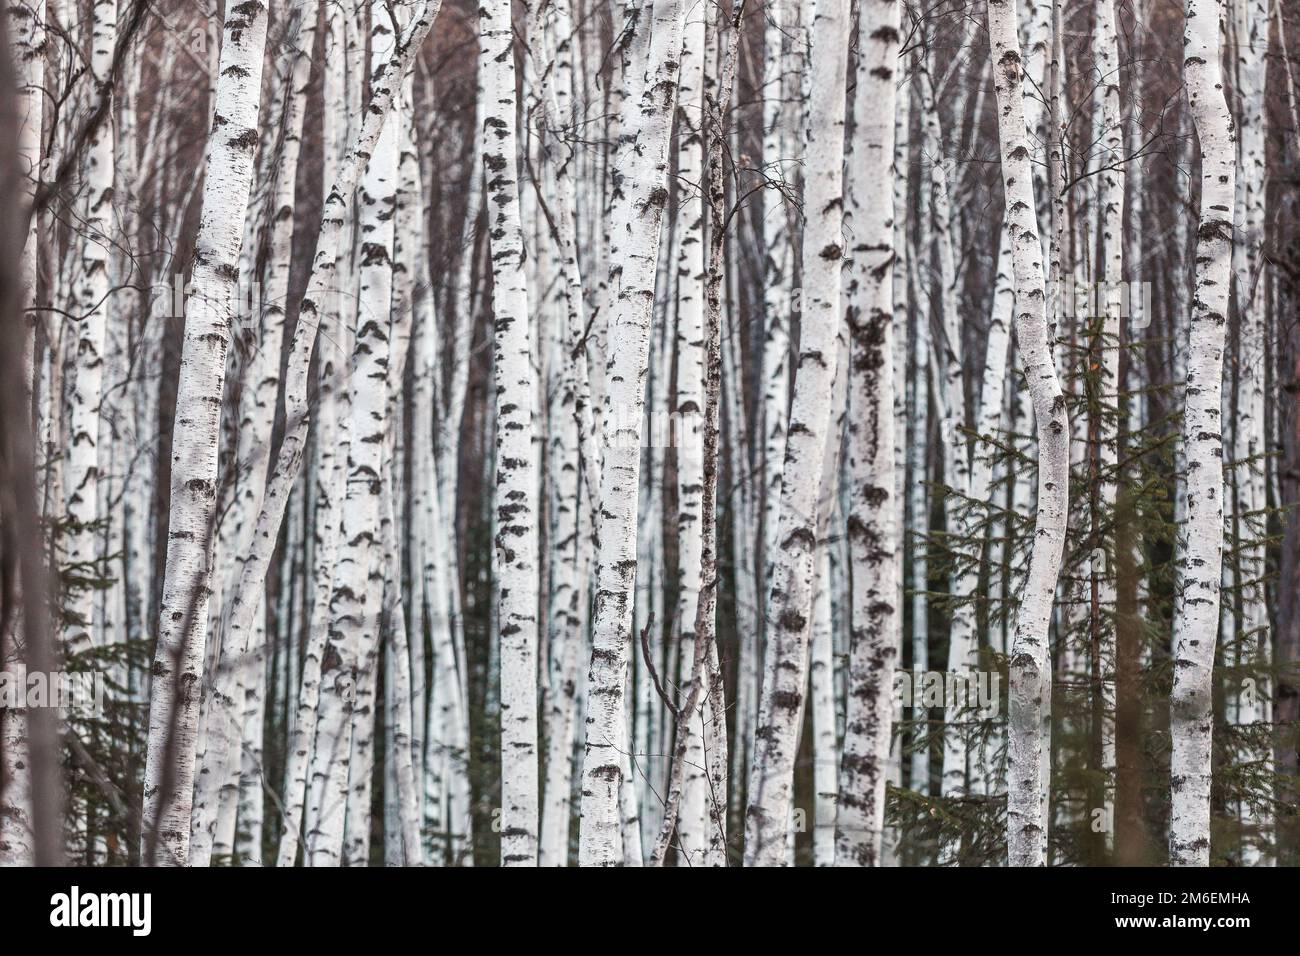 La naturaleza prístina de la reserva de Zeya. Birch Grove. Los troncos de abedul blanco están cerca uno del otro Foto de stock